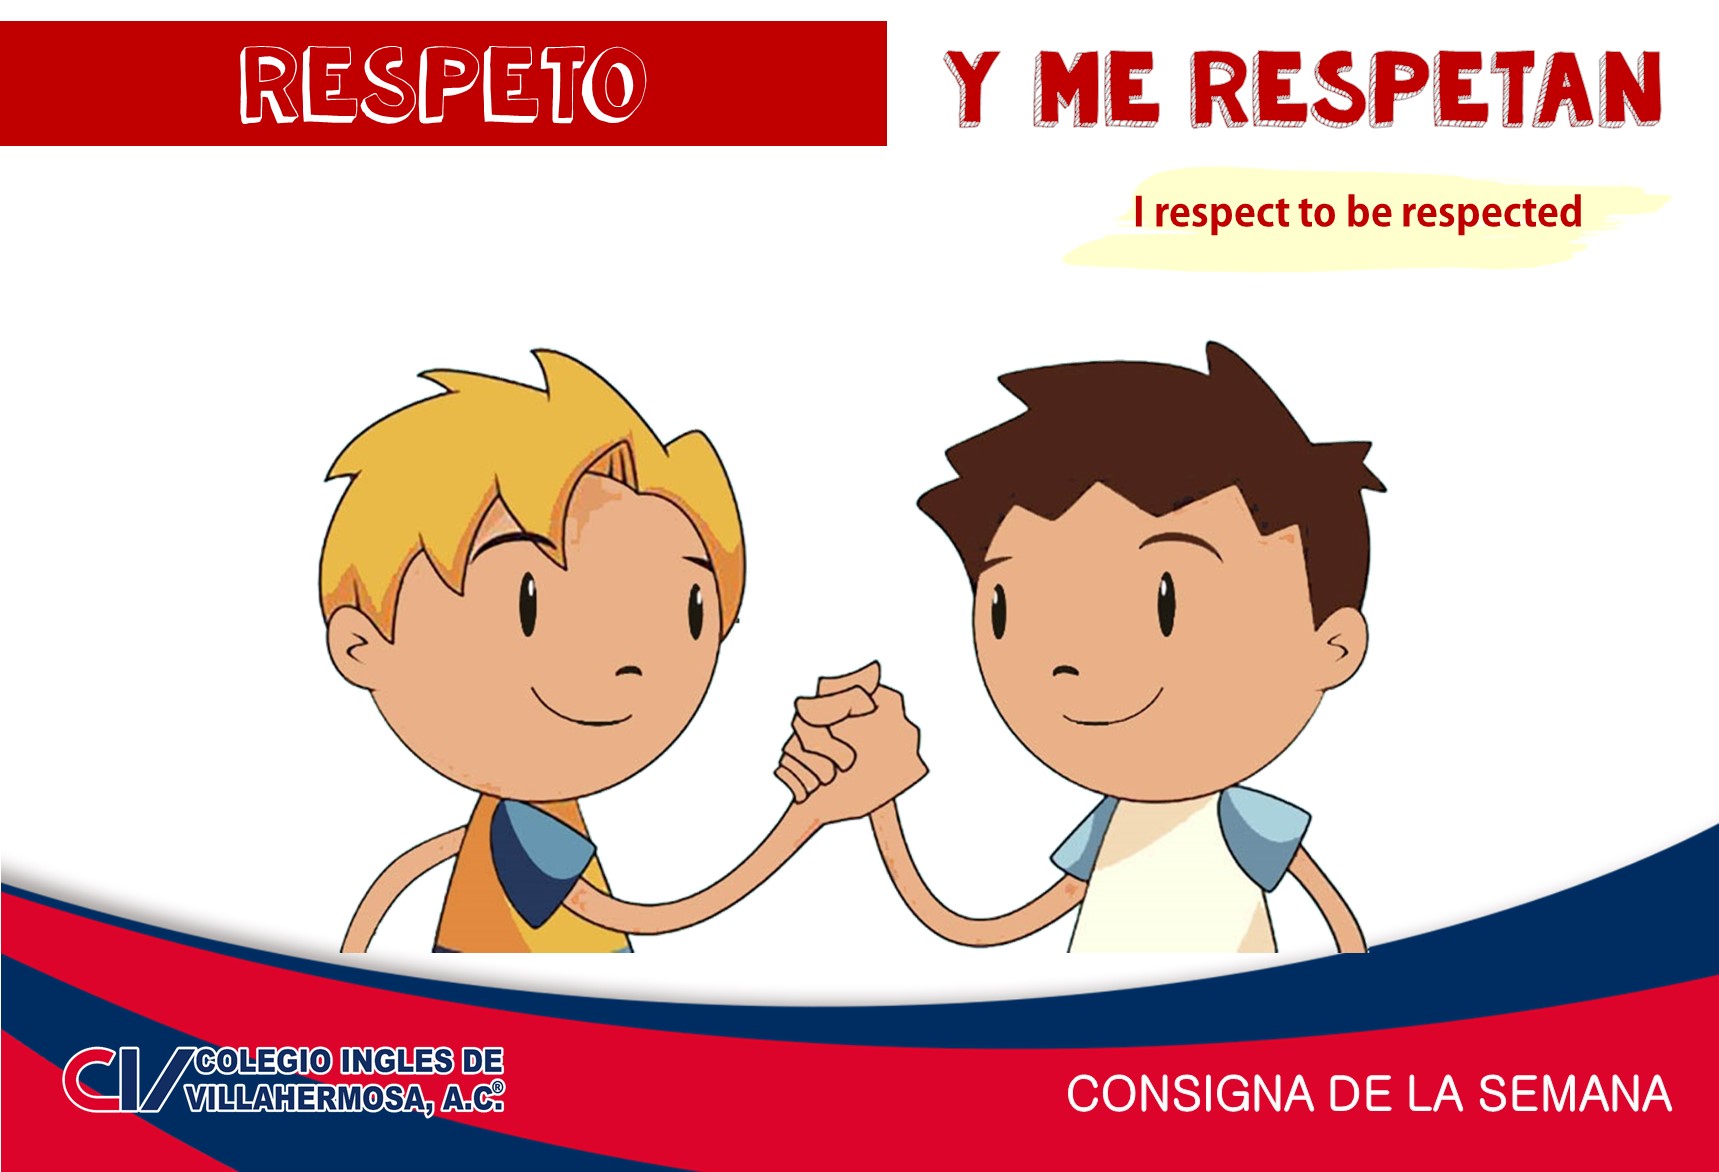 Para respetar a otros, primero debemos respetarnos a nosotros mismos.  Si respetas te respetarán, esa es una regla básica. Respetar es aceptar a cada uno como es, recuerda que, todos merecemos respeto.